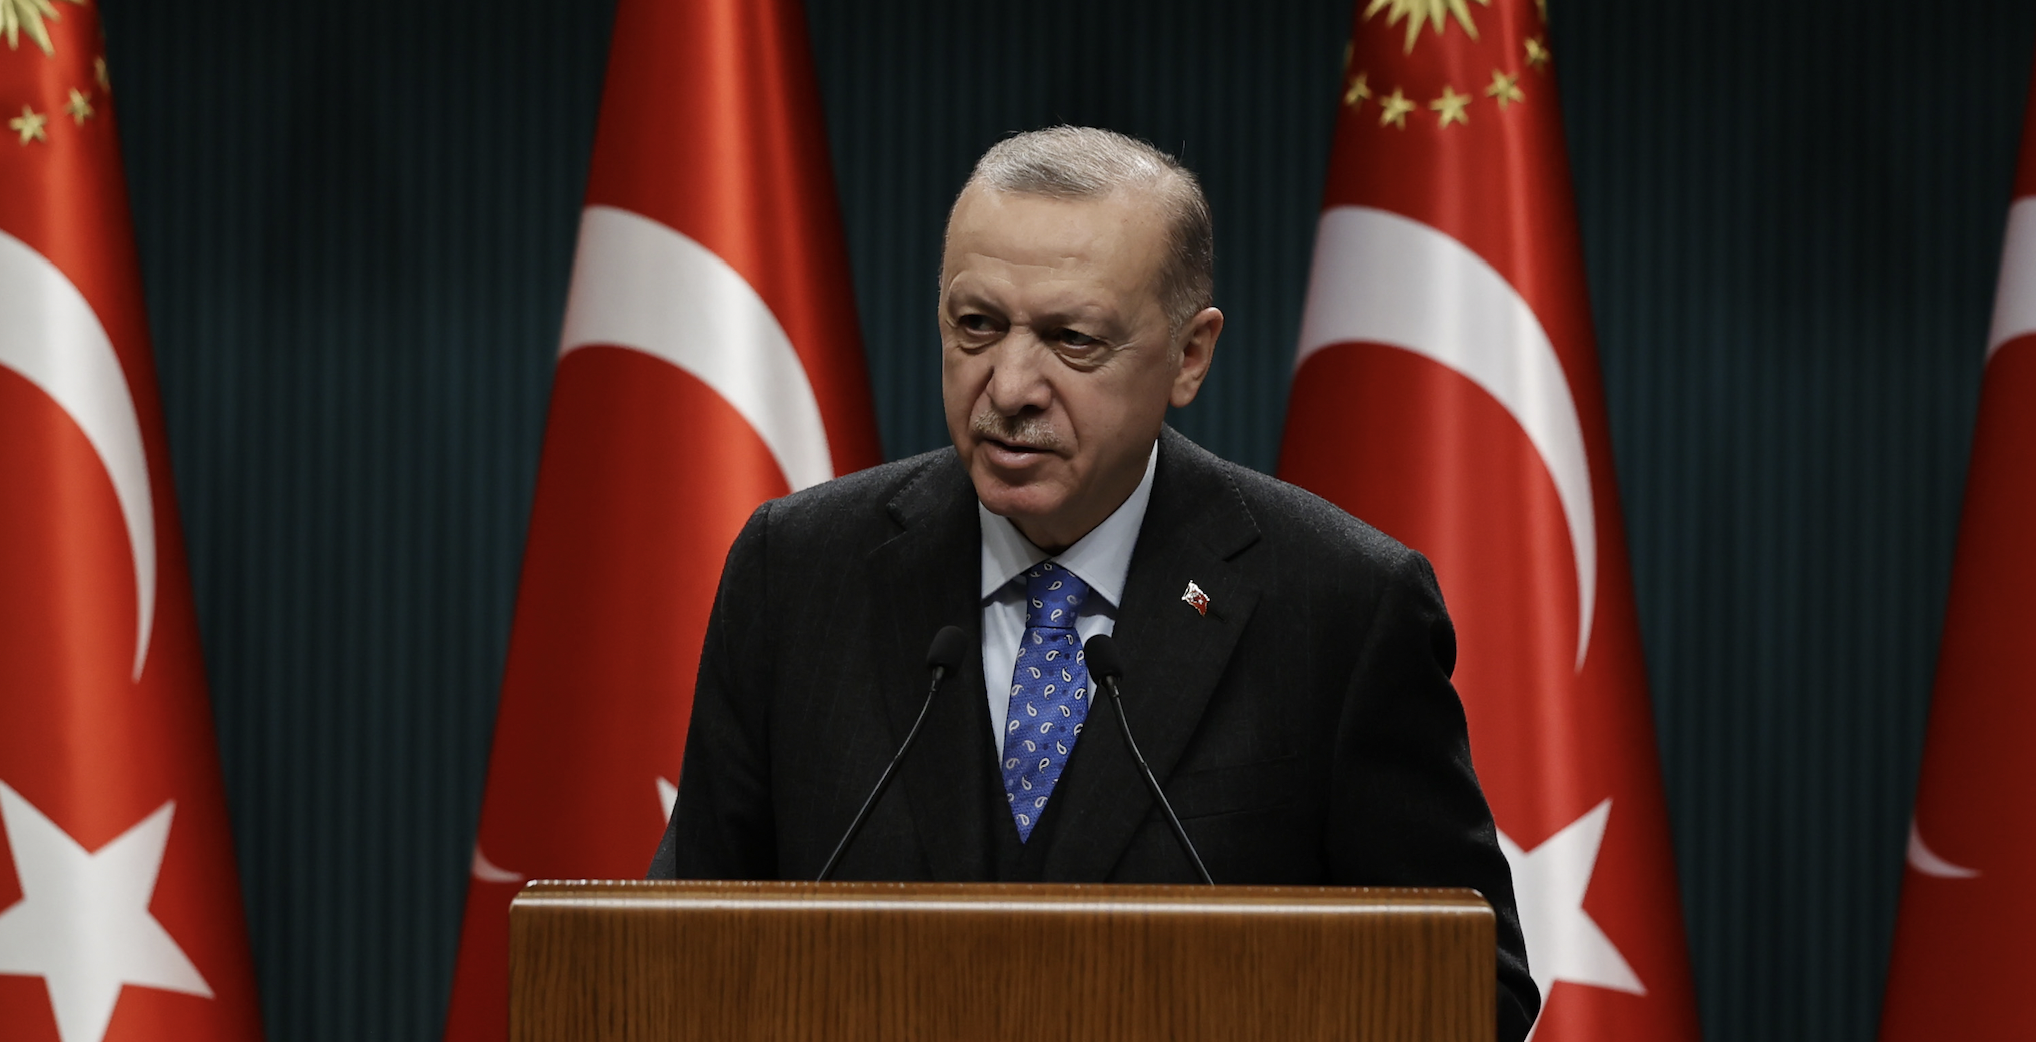 Cumhurbaşkanı Erdoğan: “Meskenlerdeki düşük tarife sınırı aylık 240 kilovatsaate yükseltildi”